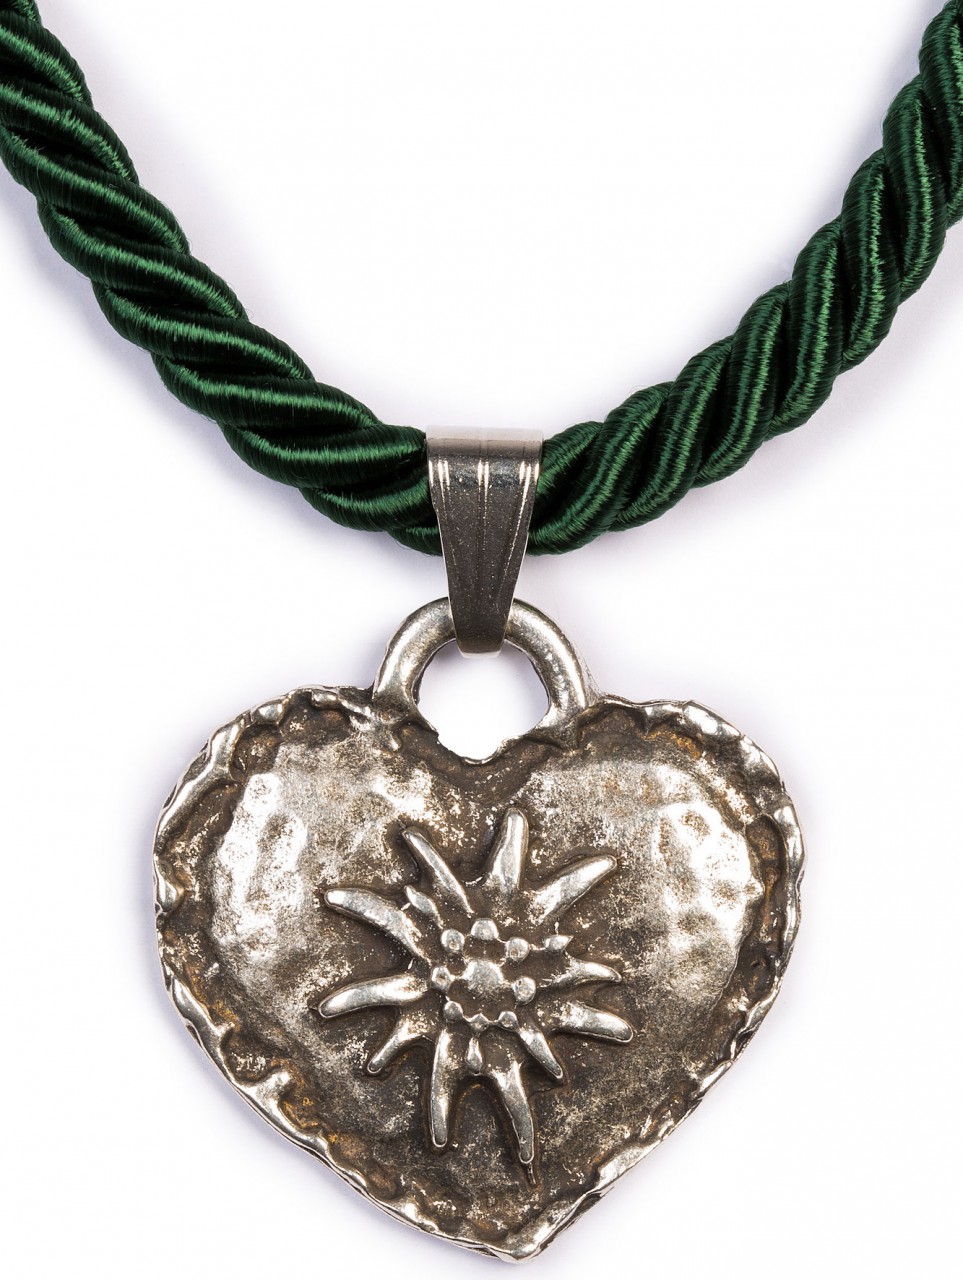 Braid Necklace with Edelweiss Heart, Fir Green